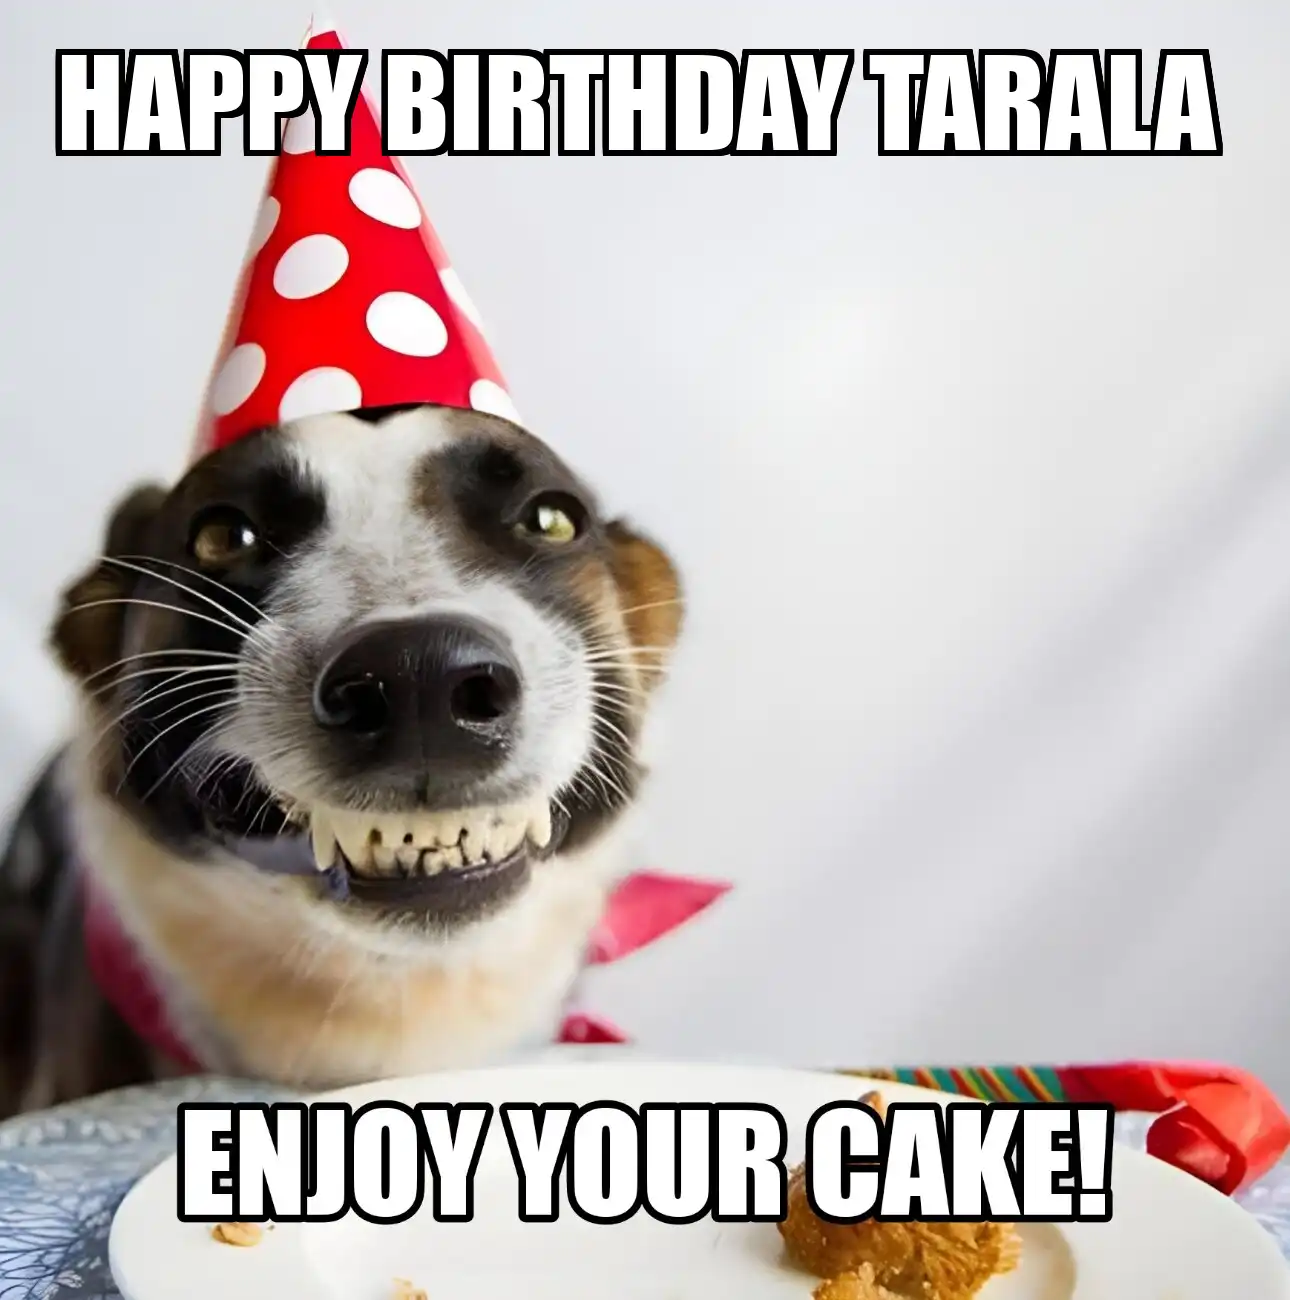 Happy Birthday Tarala Enjoy Your Cake Dog Meme